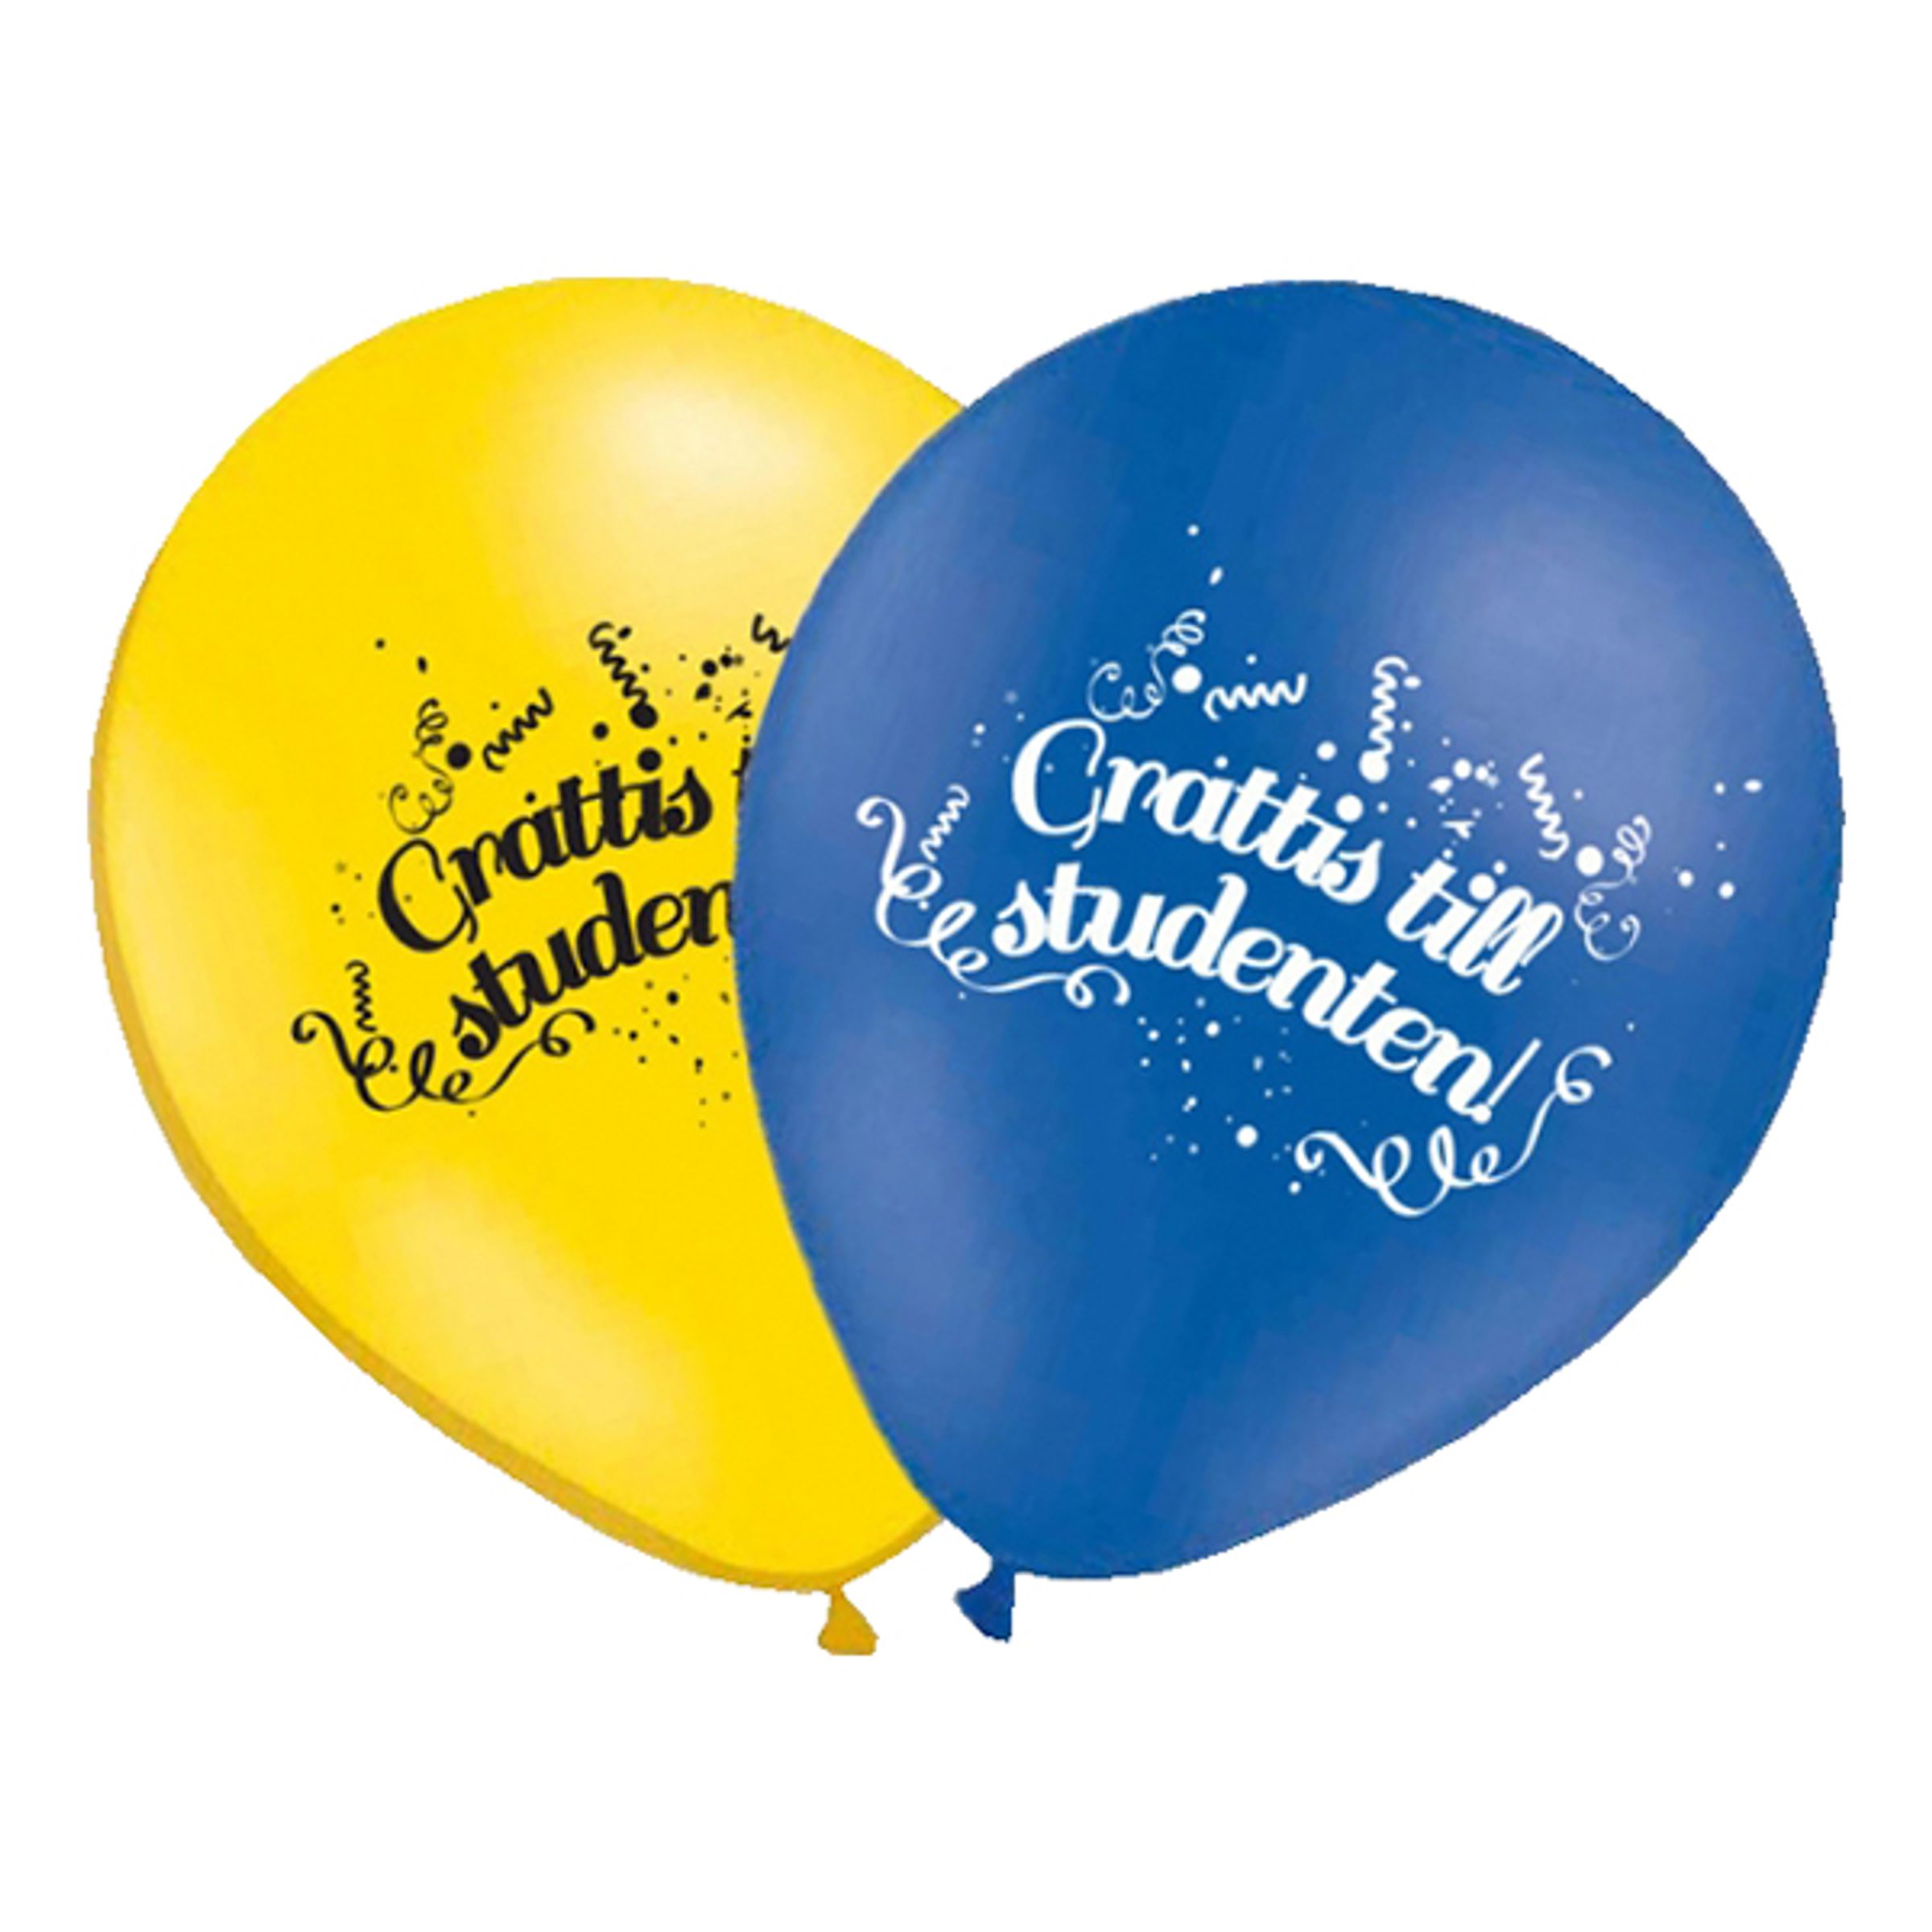 Ballonger Grattis till Studenten! - 25-pack